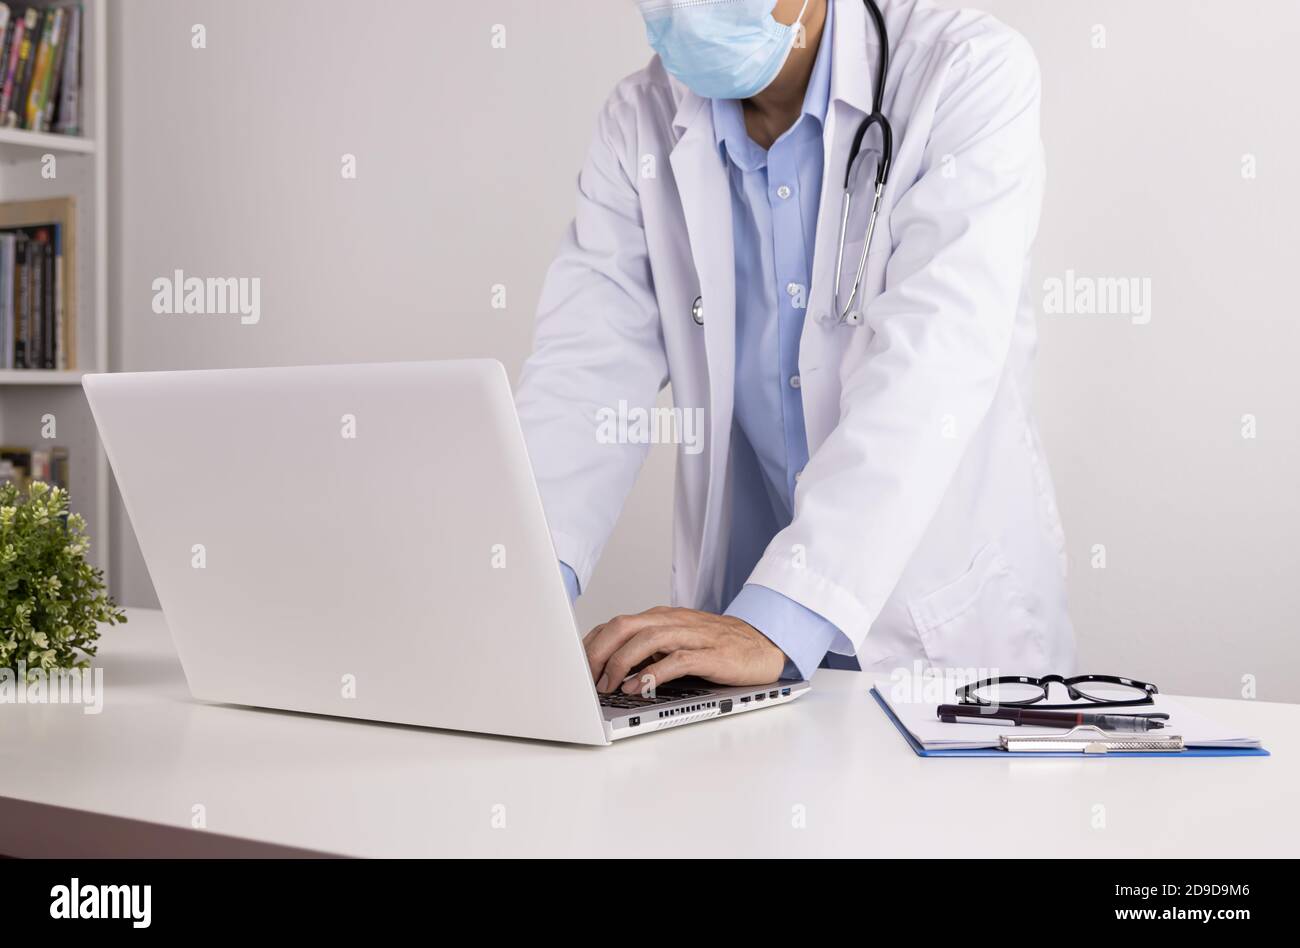 Junge asiatische Arzt Mann im Labor Mantel oder Kleid mit Stethoskop in Standpose Tragen Sie Gesichtsmaske mit Laptop-Computer Auf dem Arzttisch im Büro Stockfoto